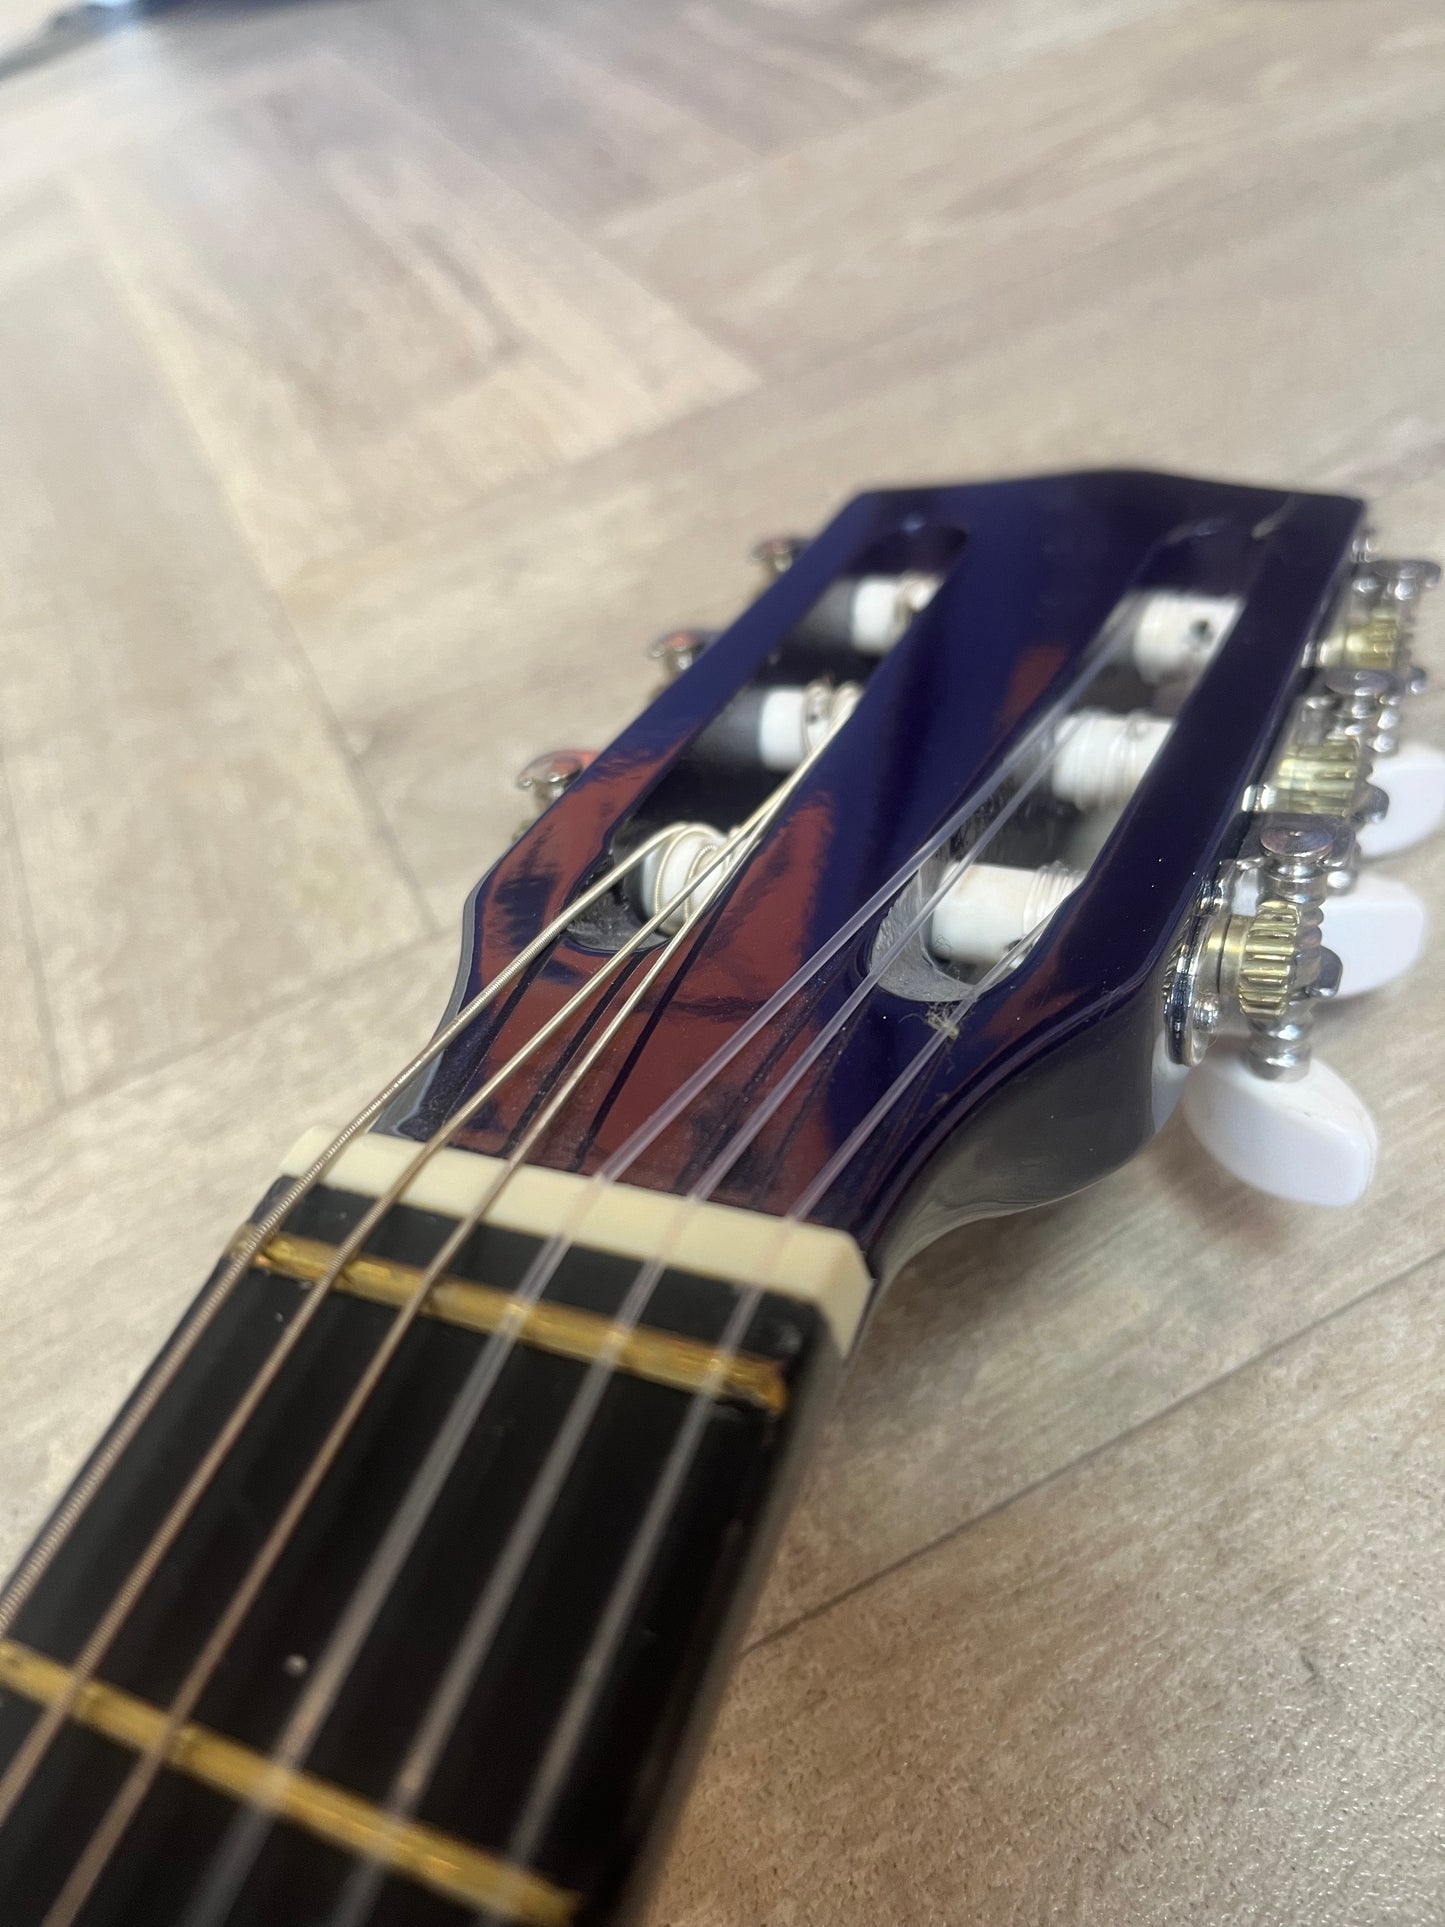 Junior Childs Size Acoustic Guitar Pack (Purple Sparkle)